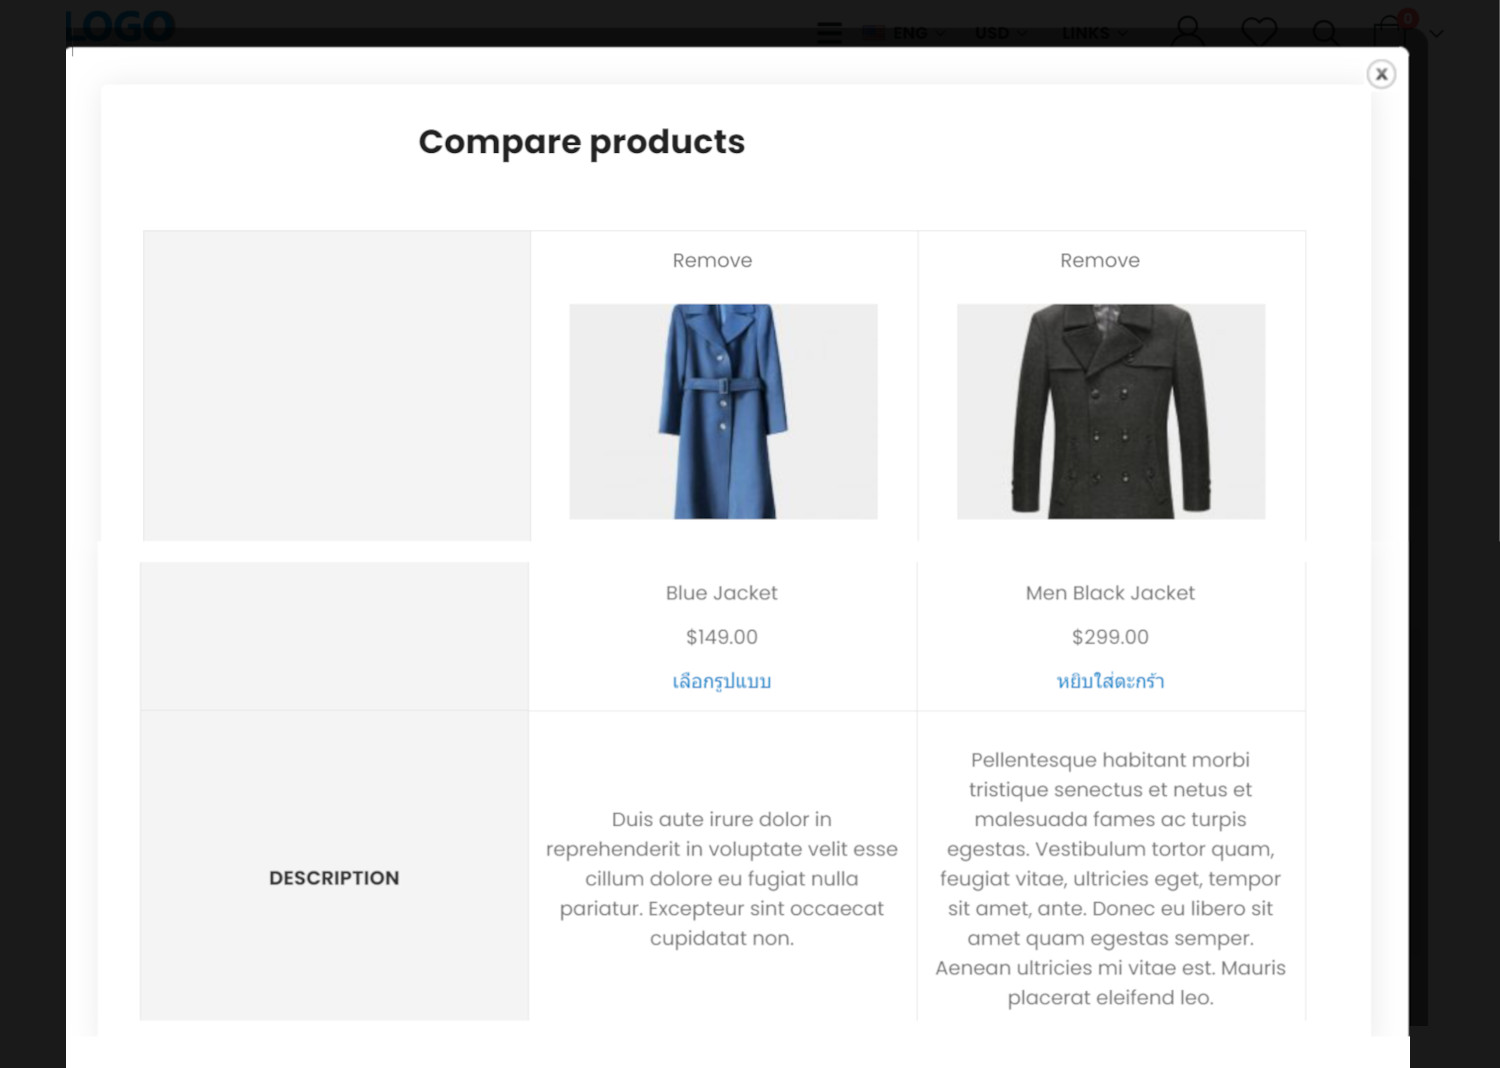 ฟีเจอร์ ecommerce ร้านออนไลน์ ขายของออนไลน์ - เปรียบเทียบสินค้า (Compare products)- เปิดร้านออนไลน์ ขายของออนไลน์ เว็บอีคอมเมอร์ส ด้วยเว็บไซต์สำเร็จรูป Ninenic ecommerce